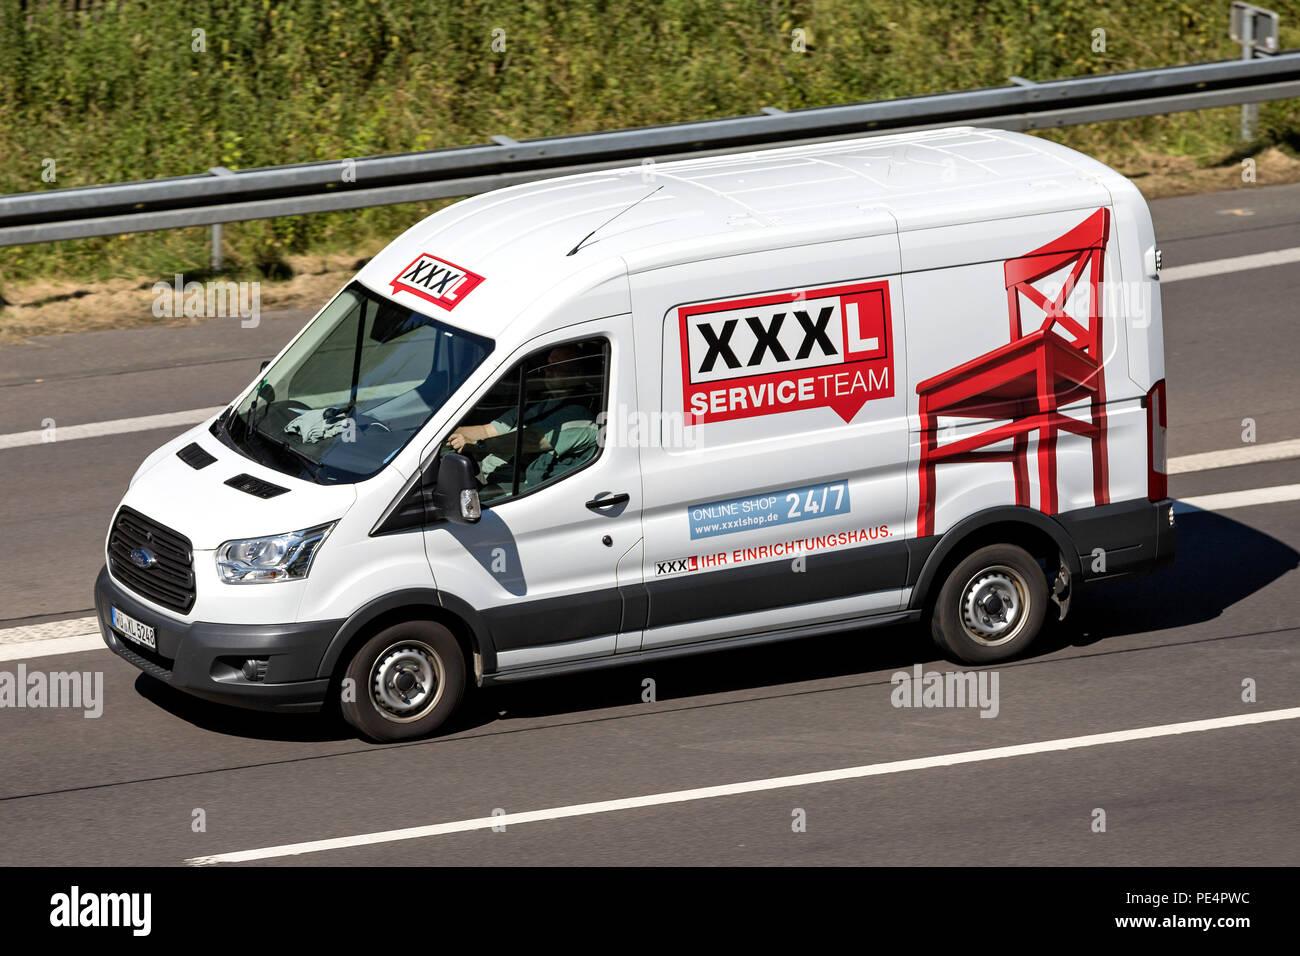 XXXL van sur l'autoroute. Autriche fondé XXXLutz est le deuxième plus grand détaillant de meubles dans le monde entier. Banque D'Images